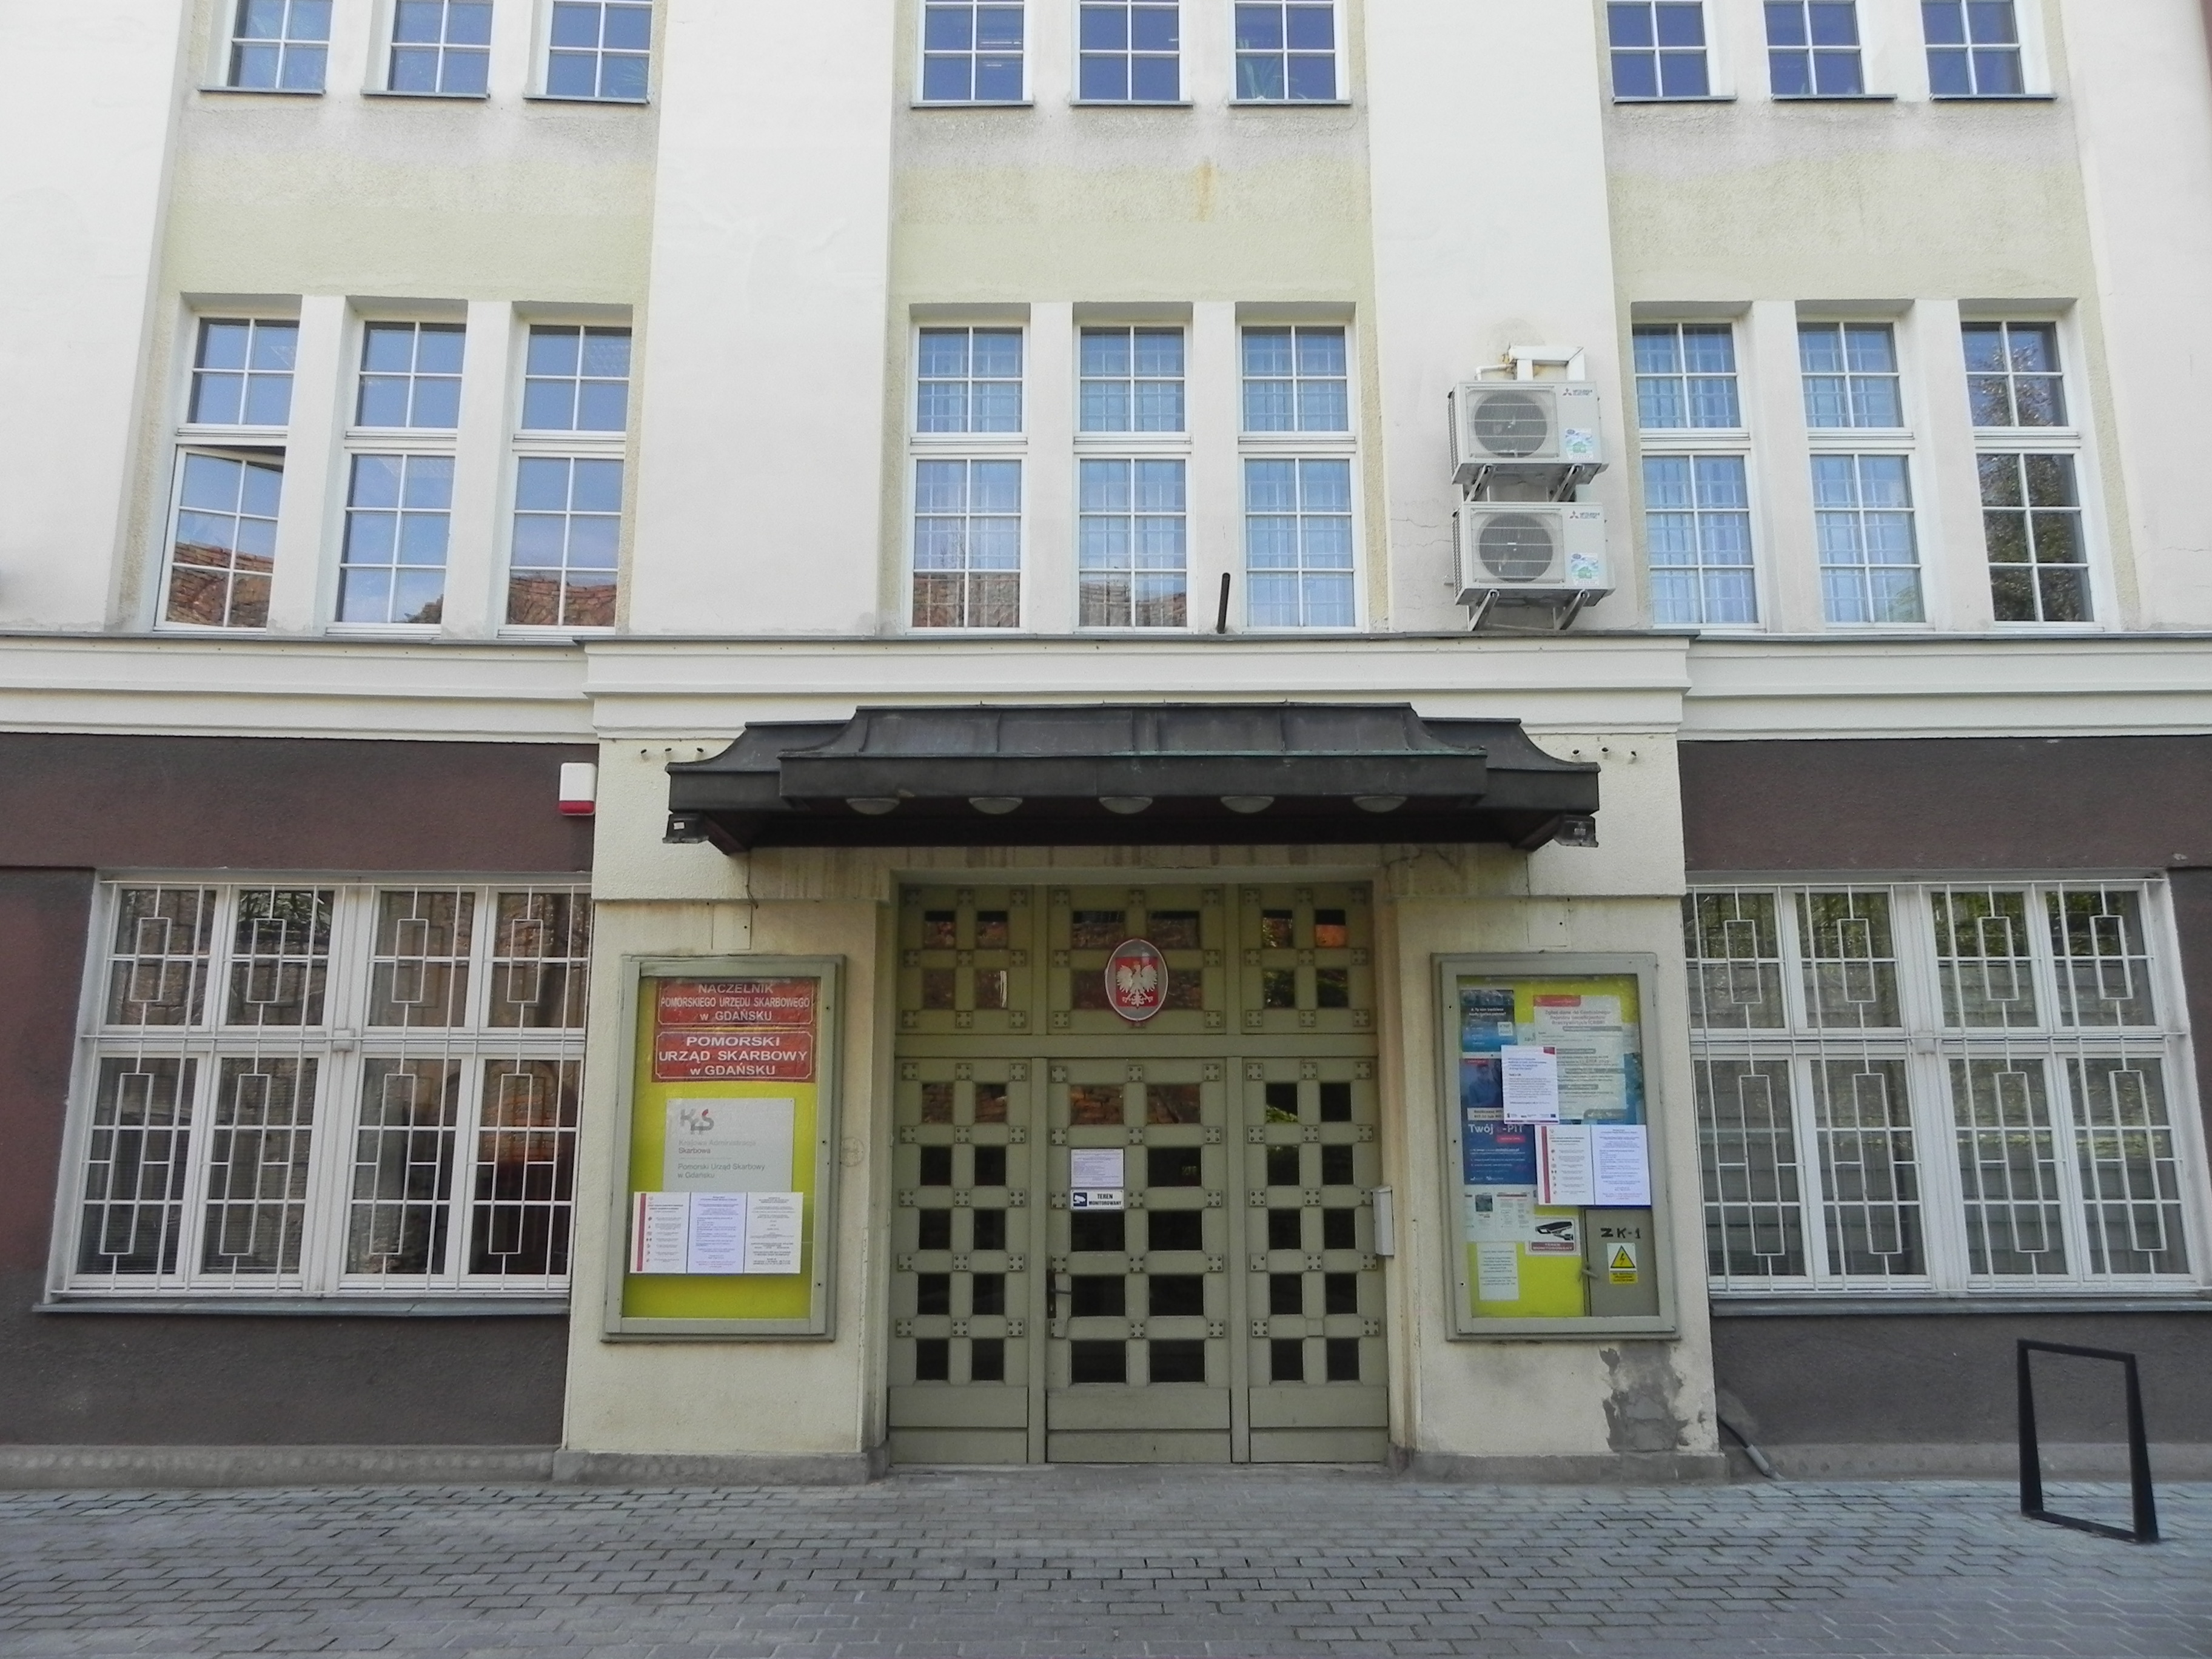 Wejście do budynku, w którym znajduje się siedziba Pomorskiego Urzędu Skarbowego w Gdańsku